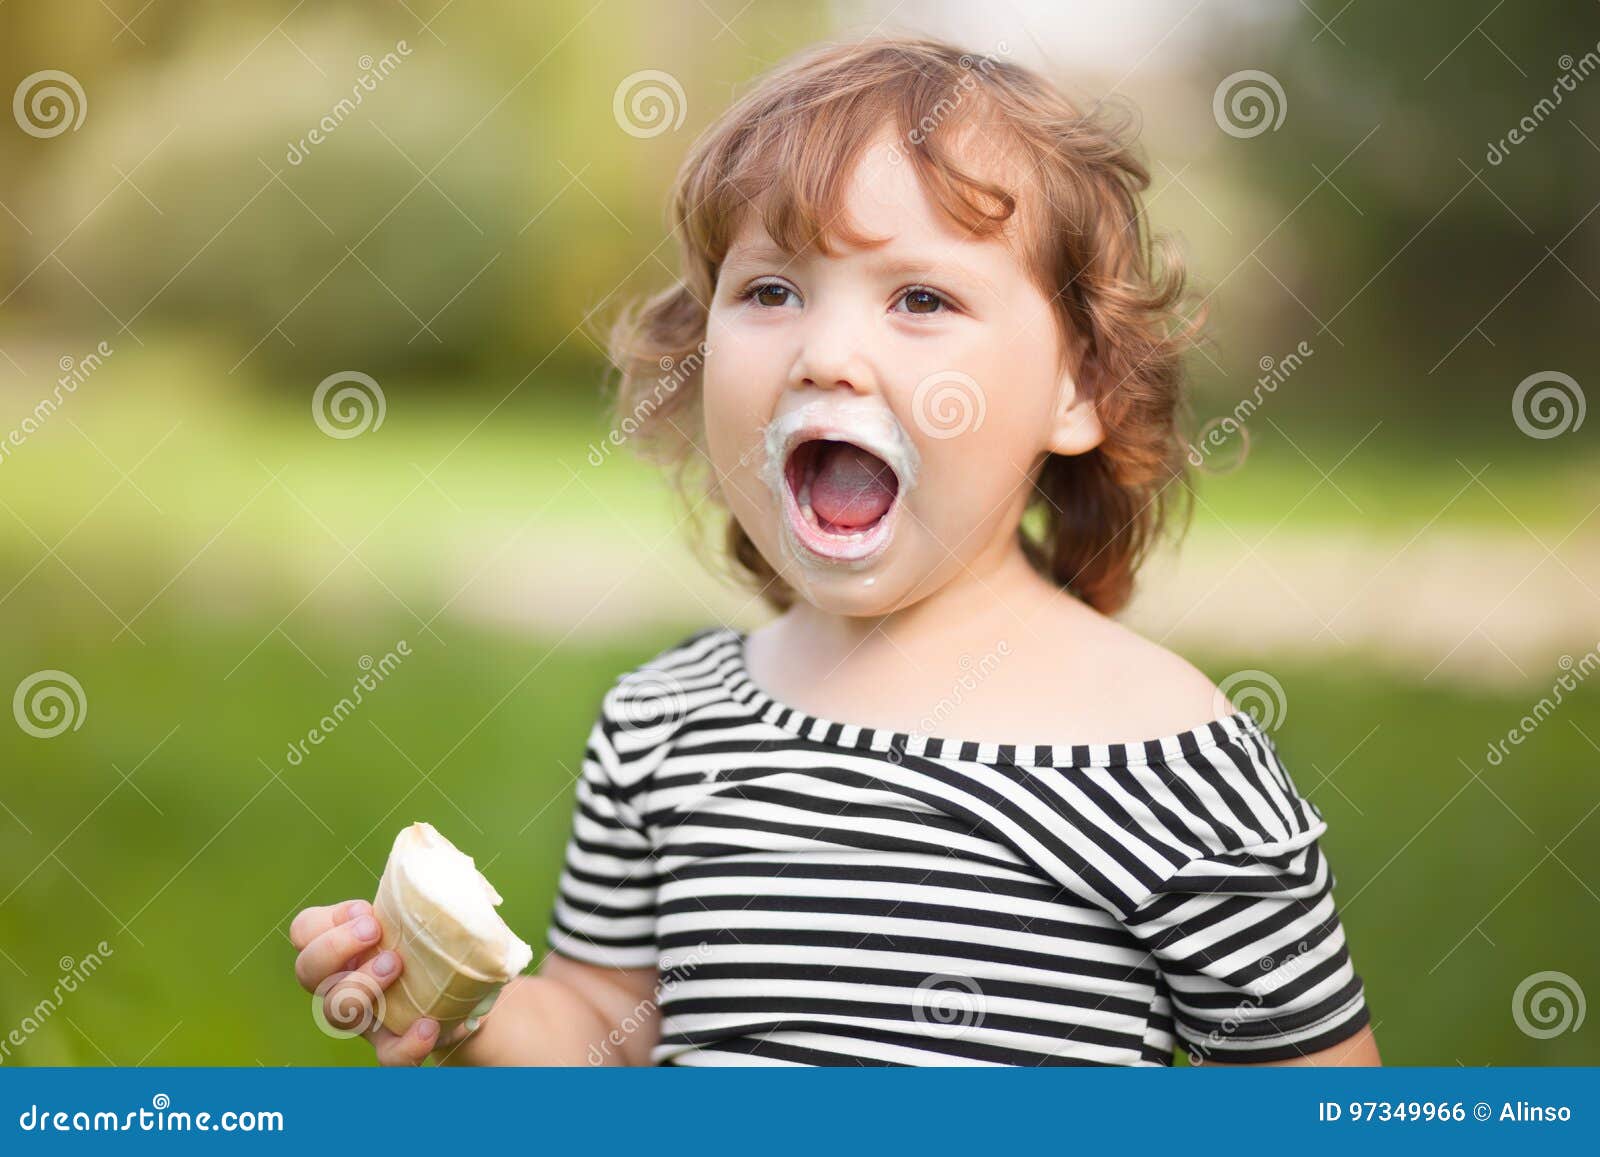 美丽的小女孩在夏天吃冰淇凌 库存照片. 图片 包括有 人们, 子项, 人员, 户外, 逗人喜爱, 嘴唇, 舌头 - 99083524